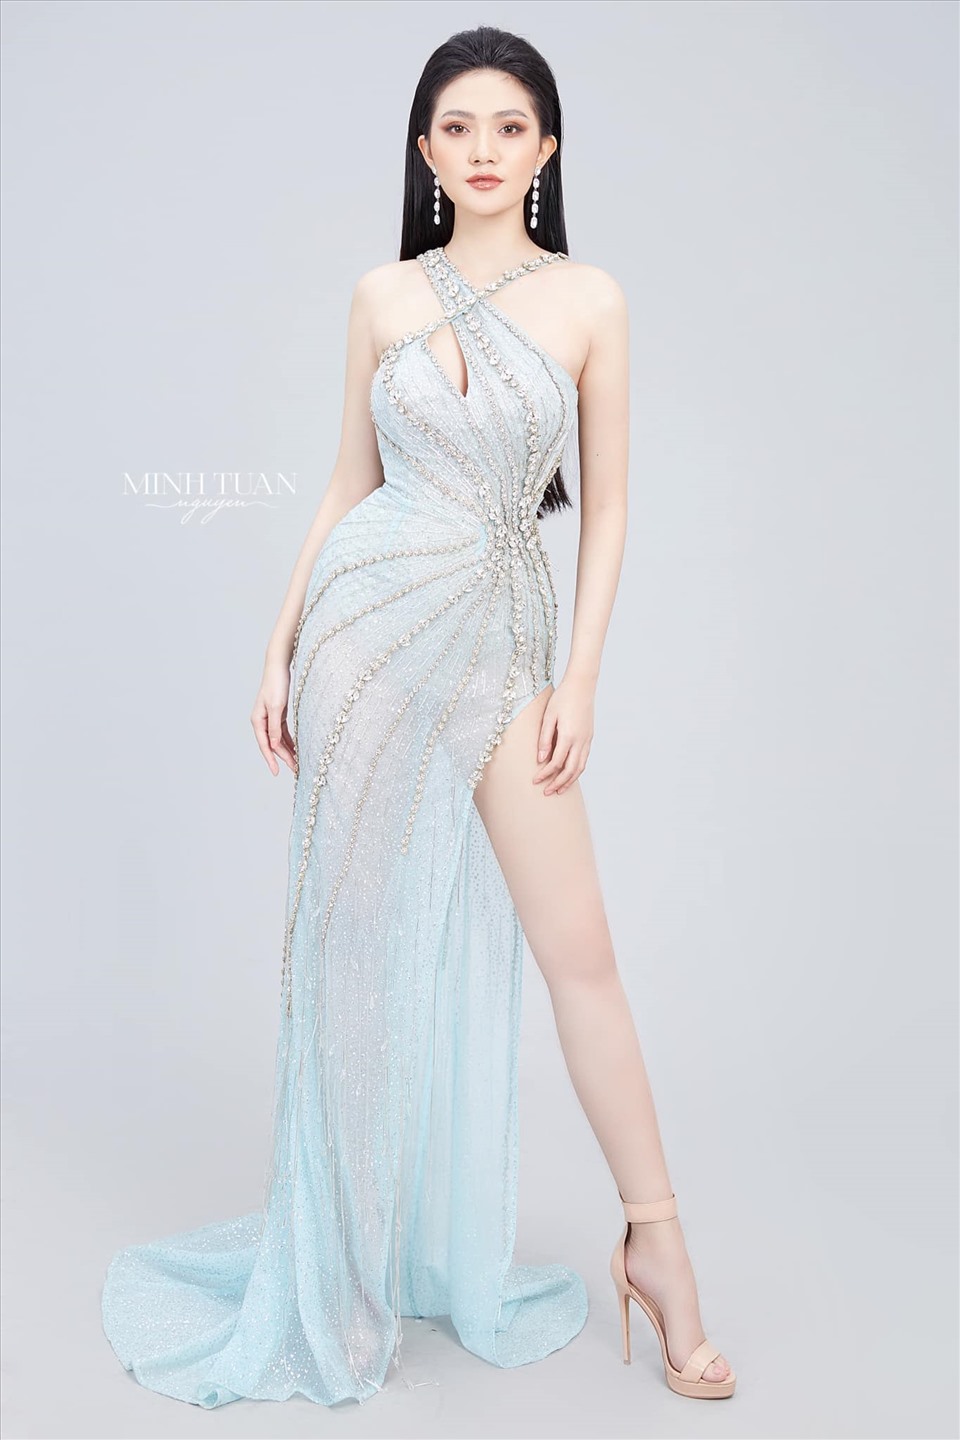 Những mẫu đầm dạ hội ánh kim thống trị đêm thi bán kết Hoa hậu Việt Nam 2020